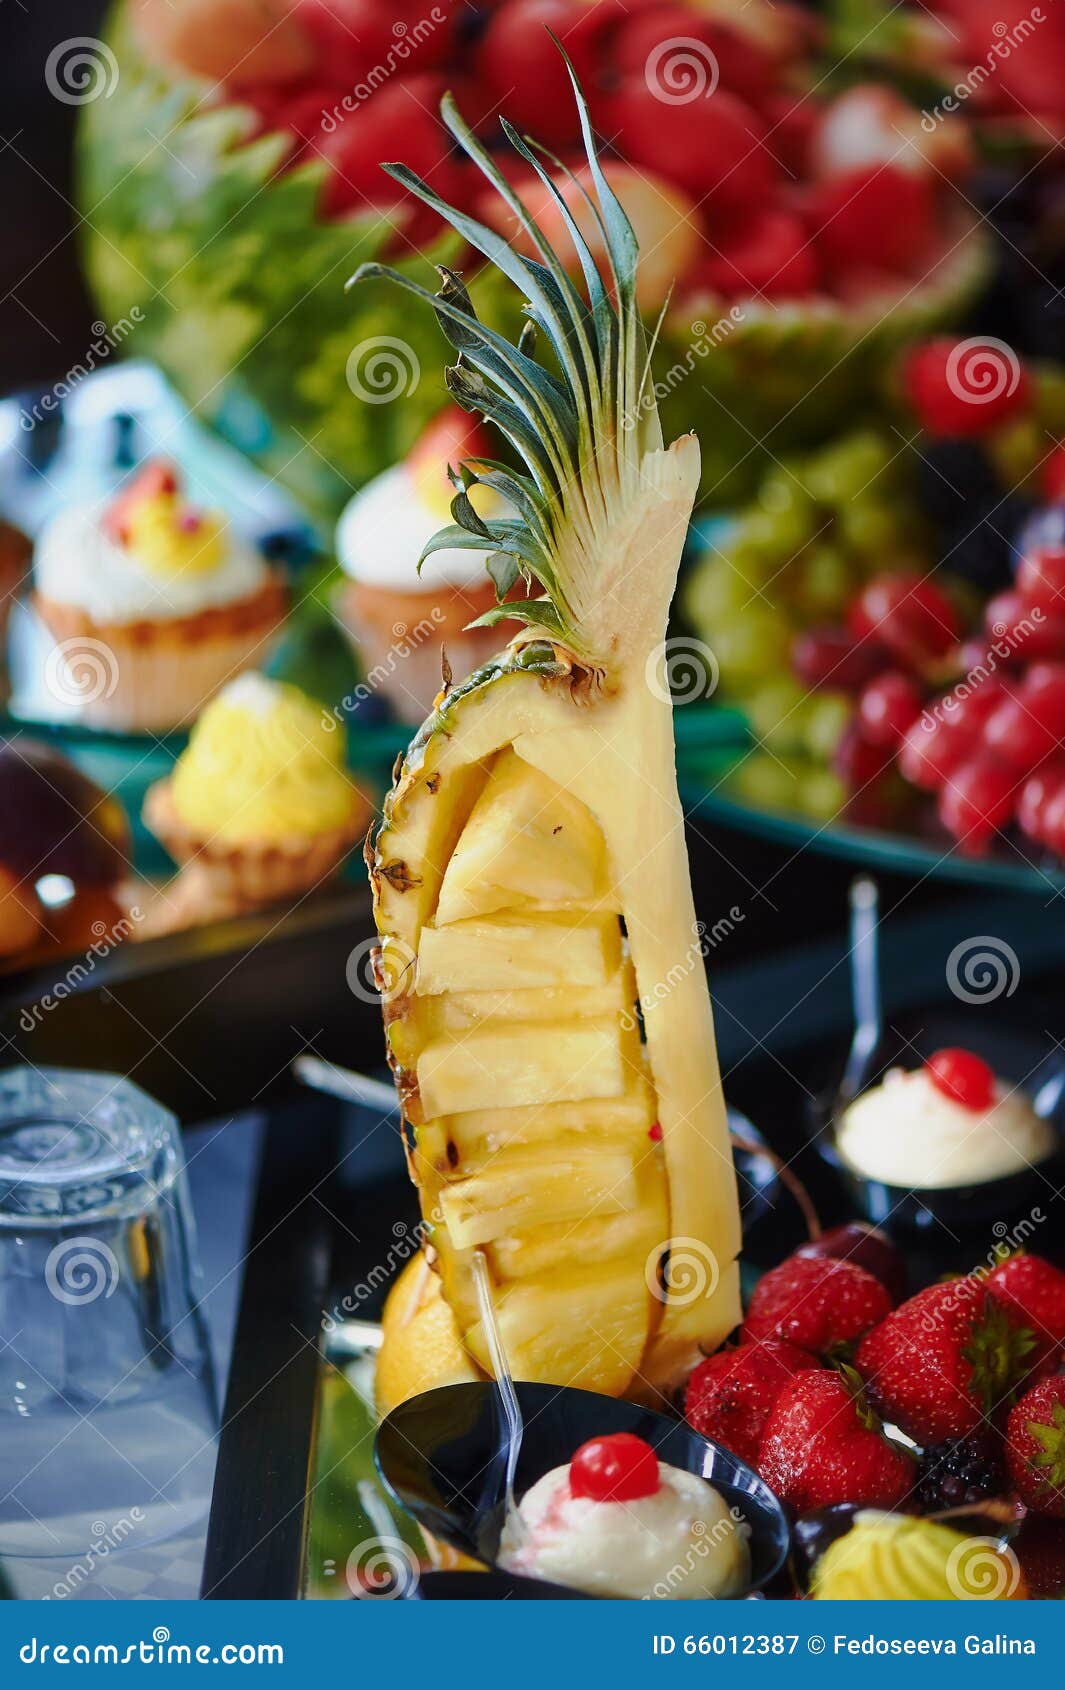 Nachtisch Von Ananas am Bankett Stockbild - Bild von nahrung, ananas ...